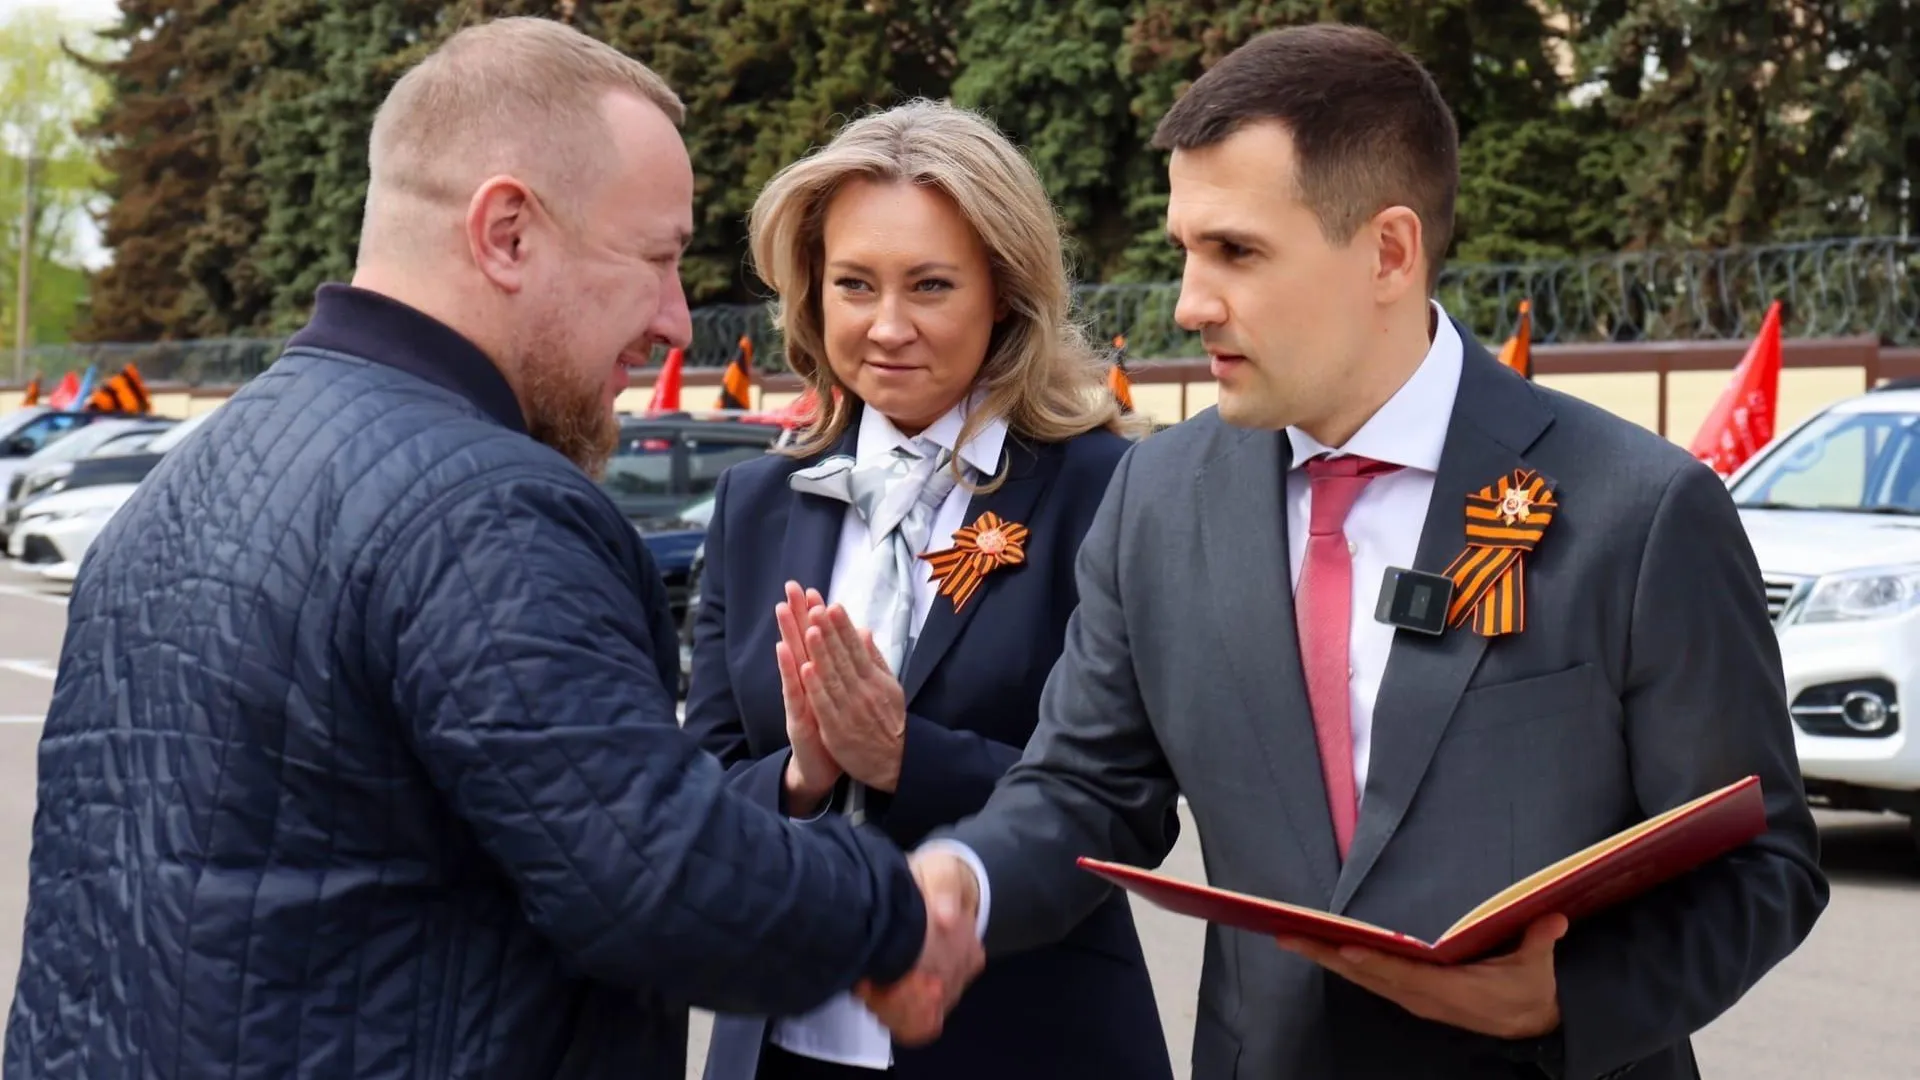 Каторов вручил поздравительный адрес от губернатора главе ГК «Орбита» Арбузову